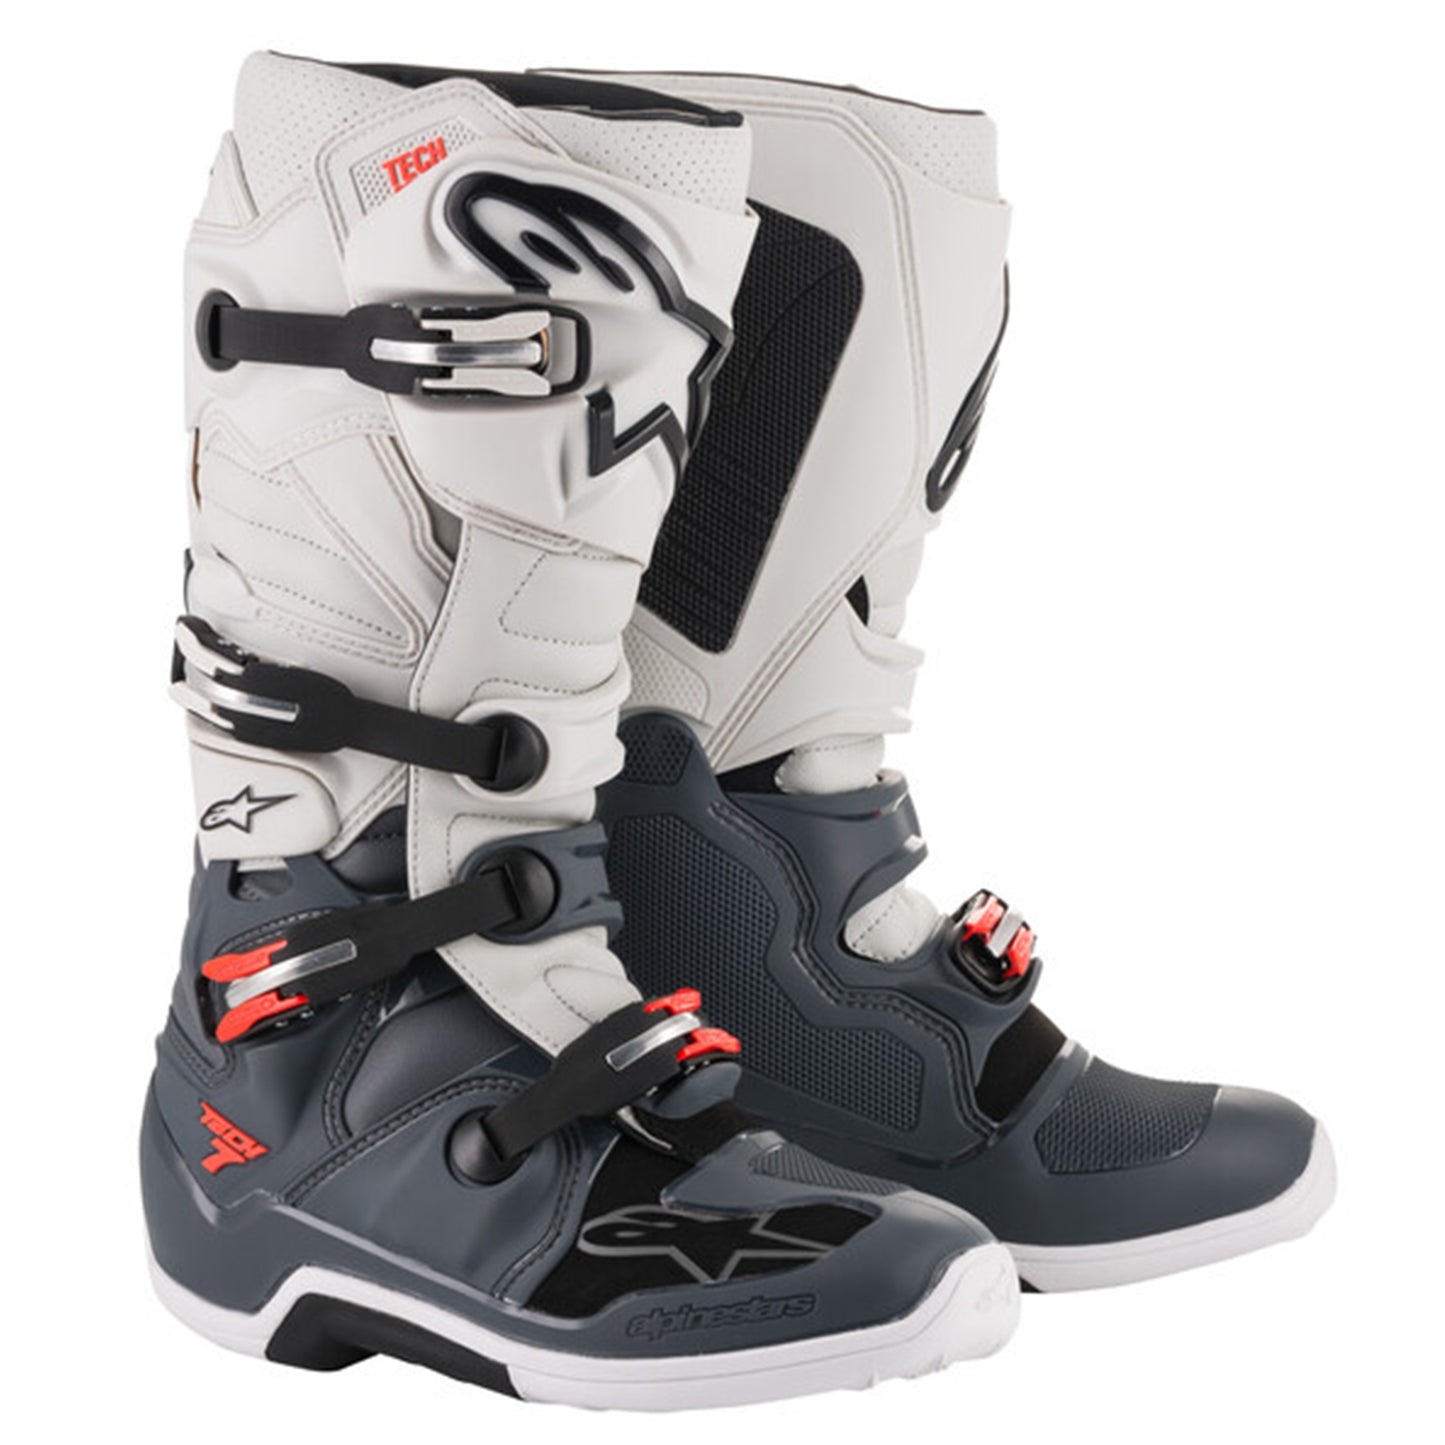 Alpinestars Tech 7 Motorcross Boots - Dark Grey/Light Grey/Red Flo (930)